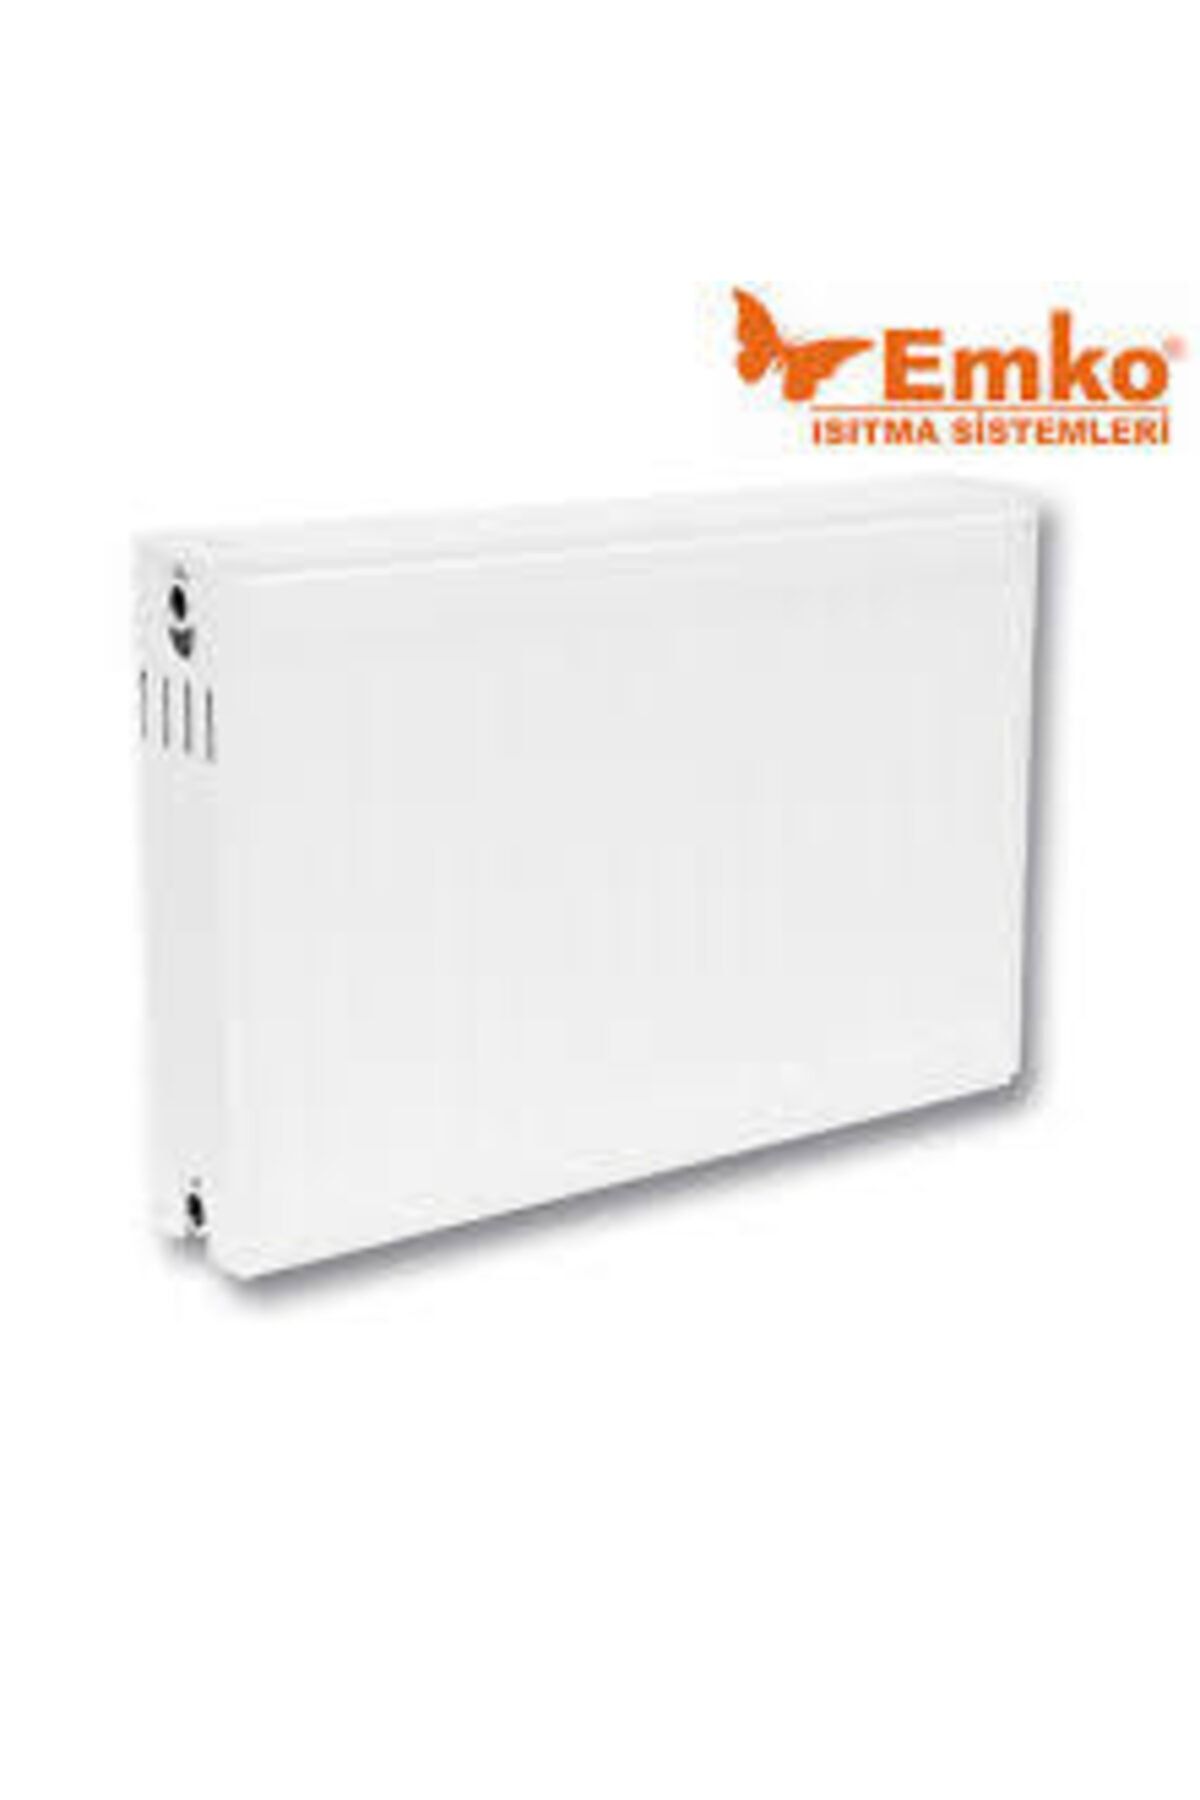 Emko 600x700 Panel Radyatör